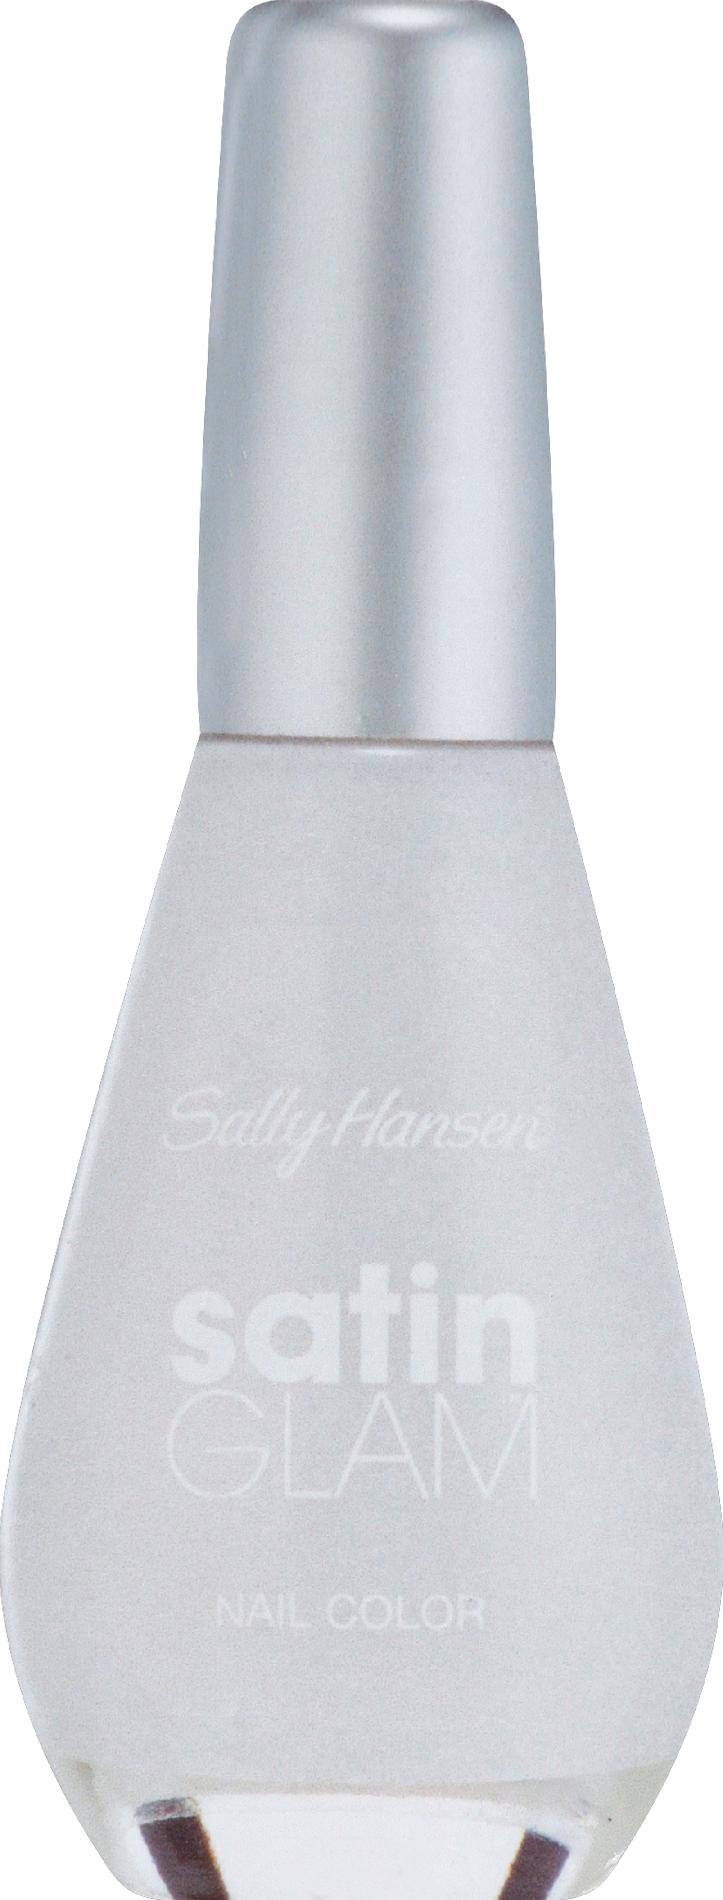 Sally Hansen Salon Effects Satin Glam .Crystalline, 0.33 fl. oz 10 mL